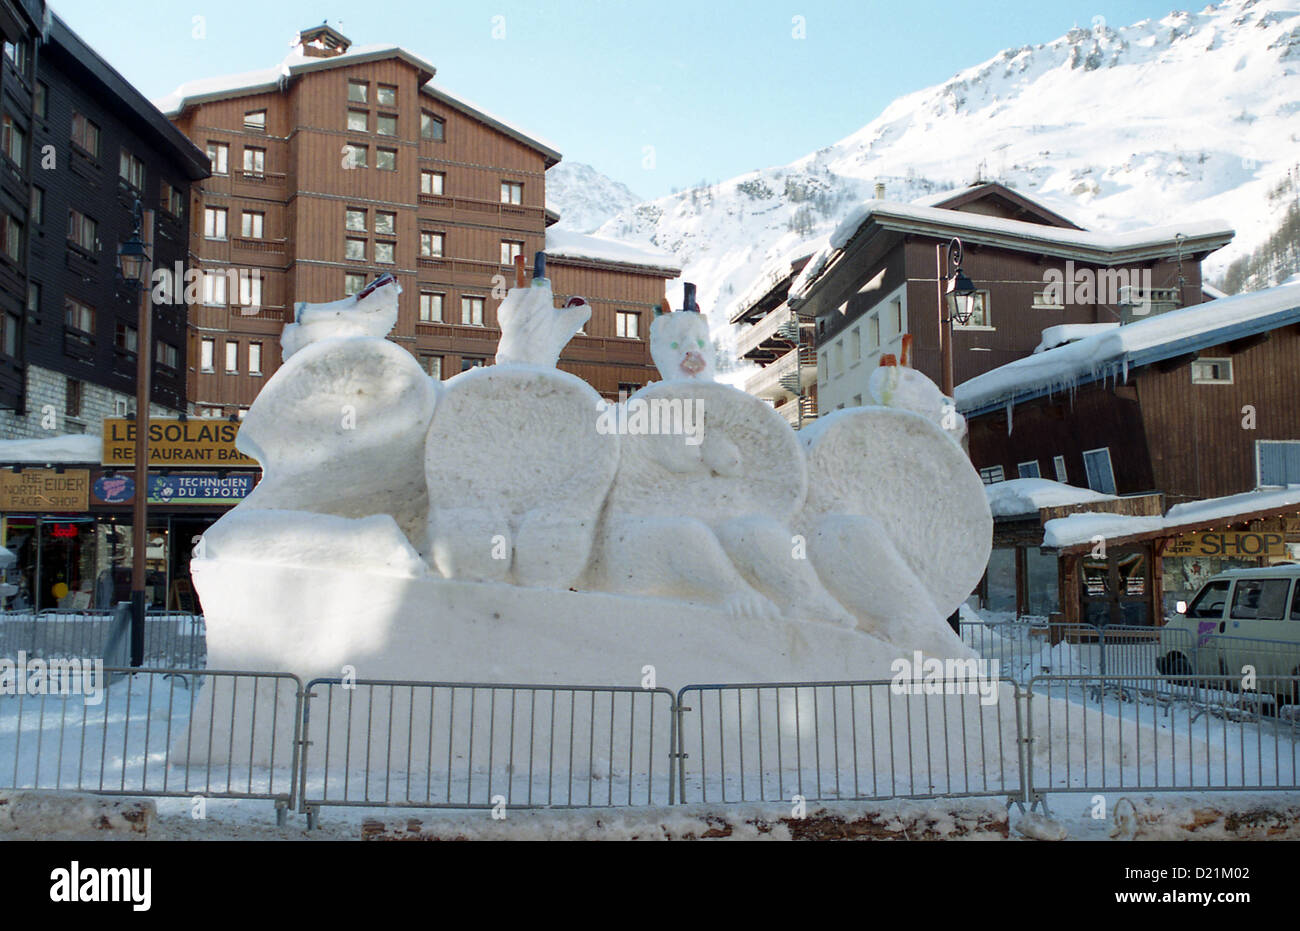 "2000" scultura di neve il primo giorno del nuovo millennio il 1° gennaio 2000 francesi nella località sciistica della Val d'Isere. Foto Stock